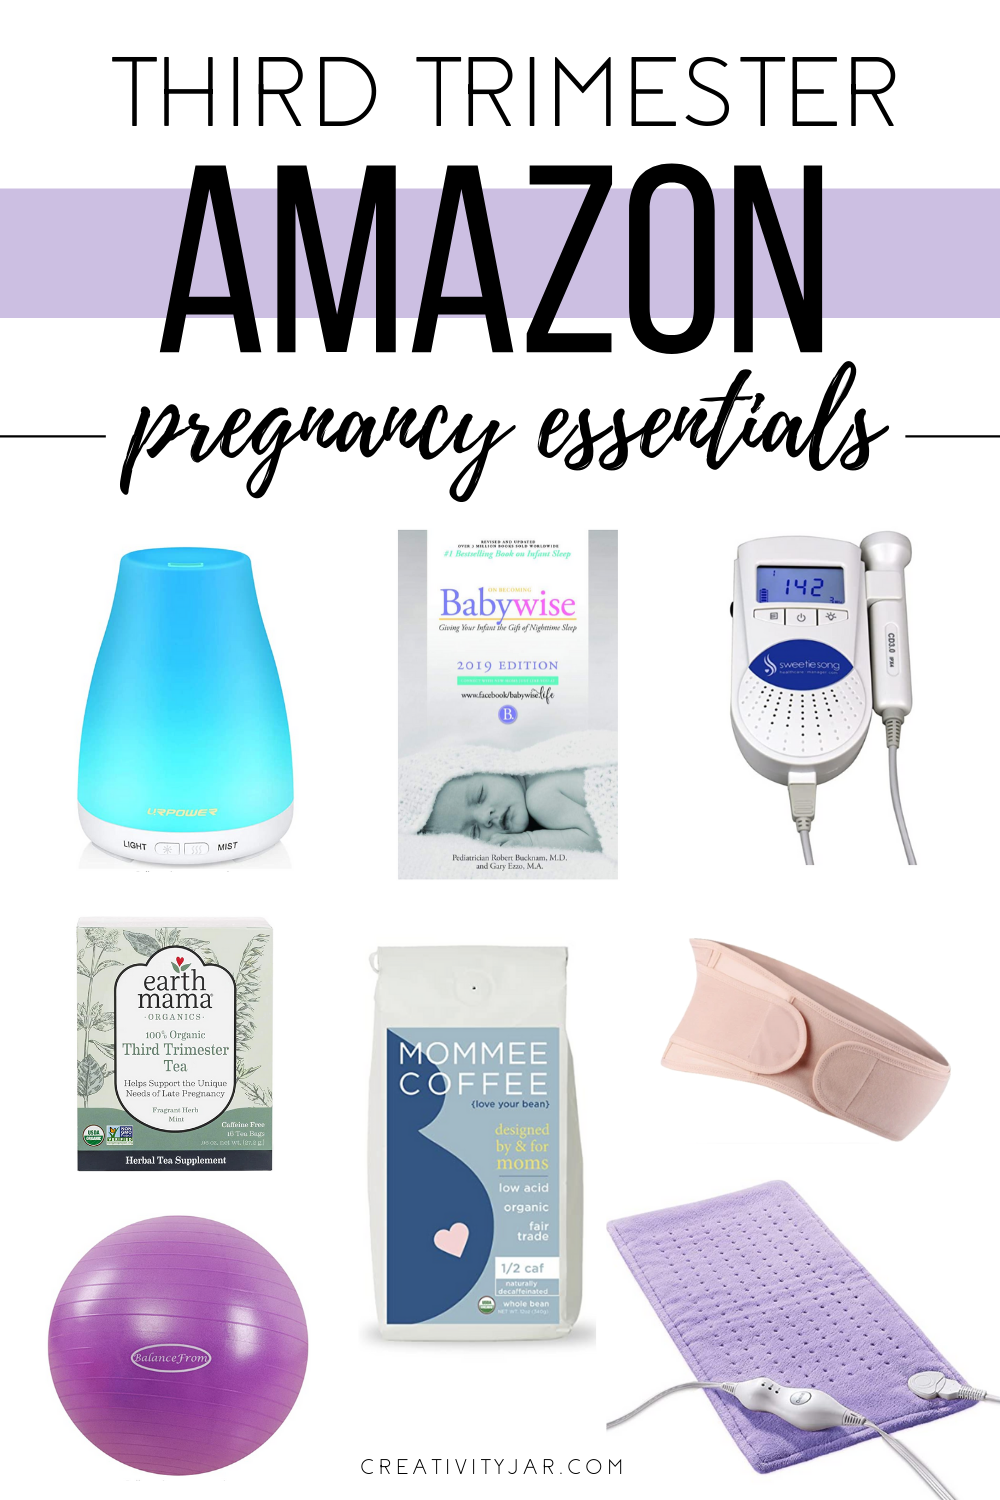 Third Trimester Amazon Pregnancy Essentials